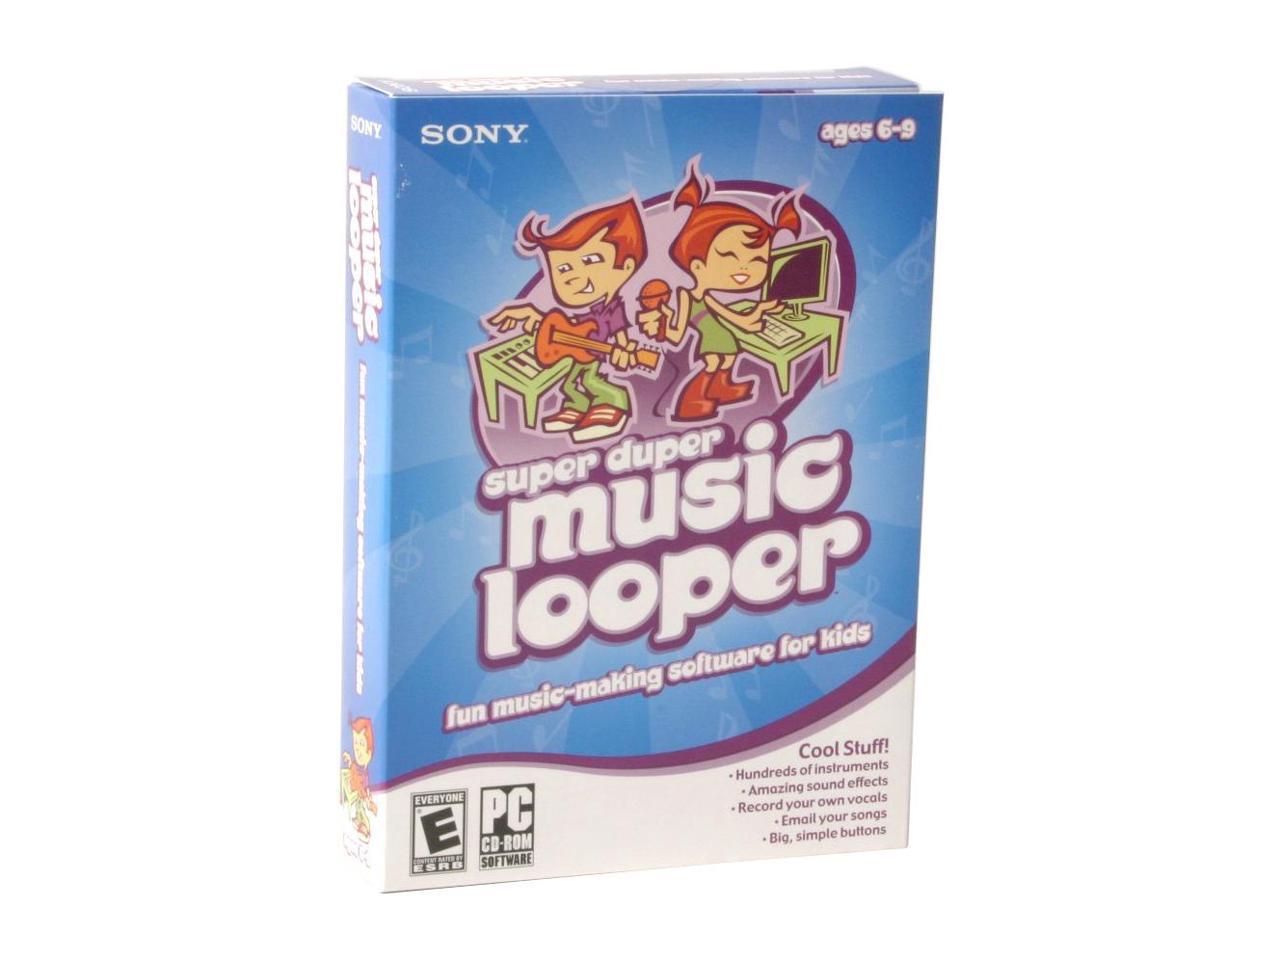 SONY Super Duper Music Looper - Newegg.com